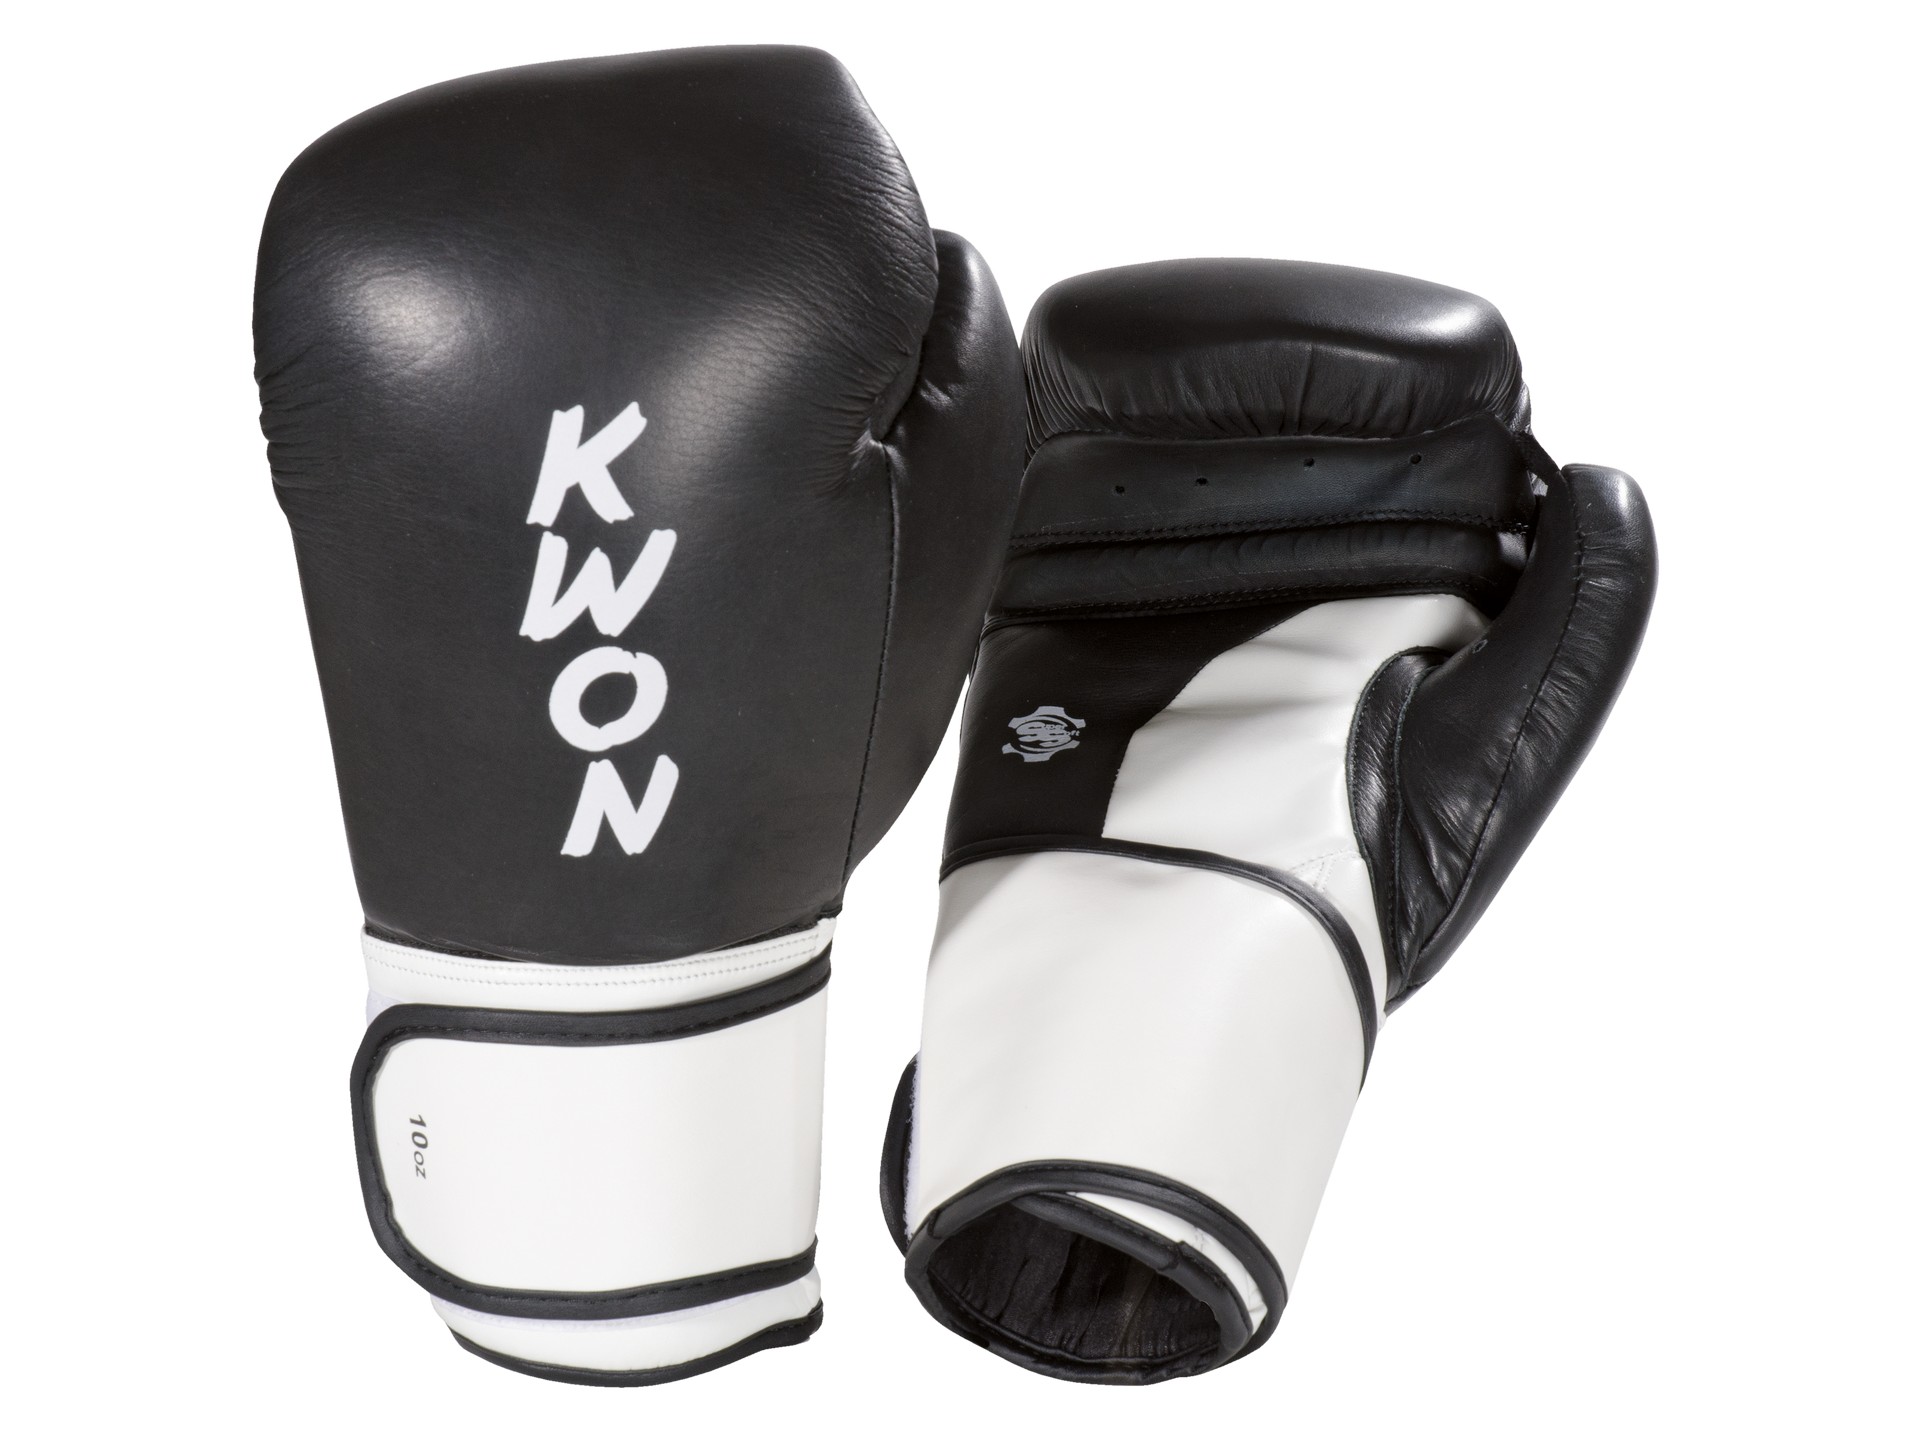 KWON Boxhandschuhe Super | WKU Thai Kickboxen Boxen Champ | Wettkampfhandschuhe anerkannt 